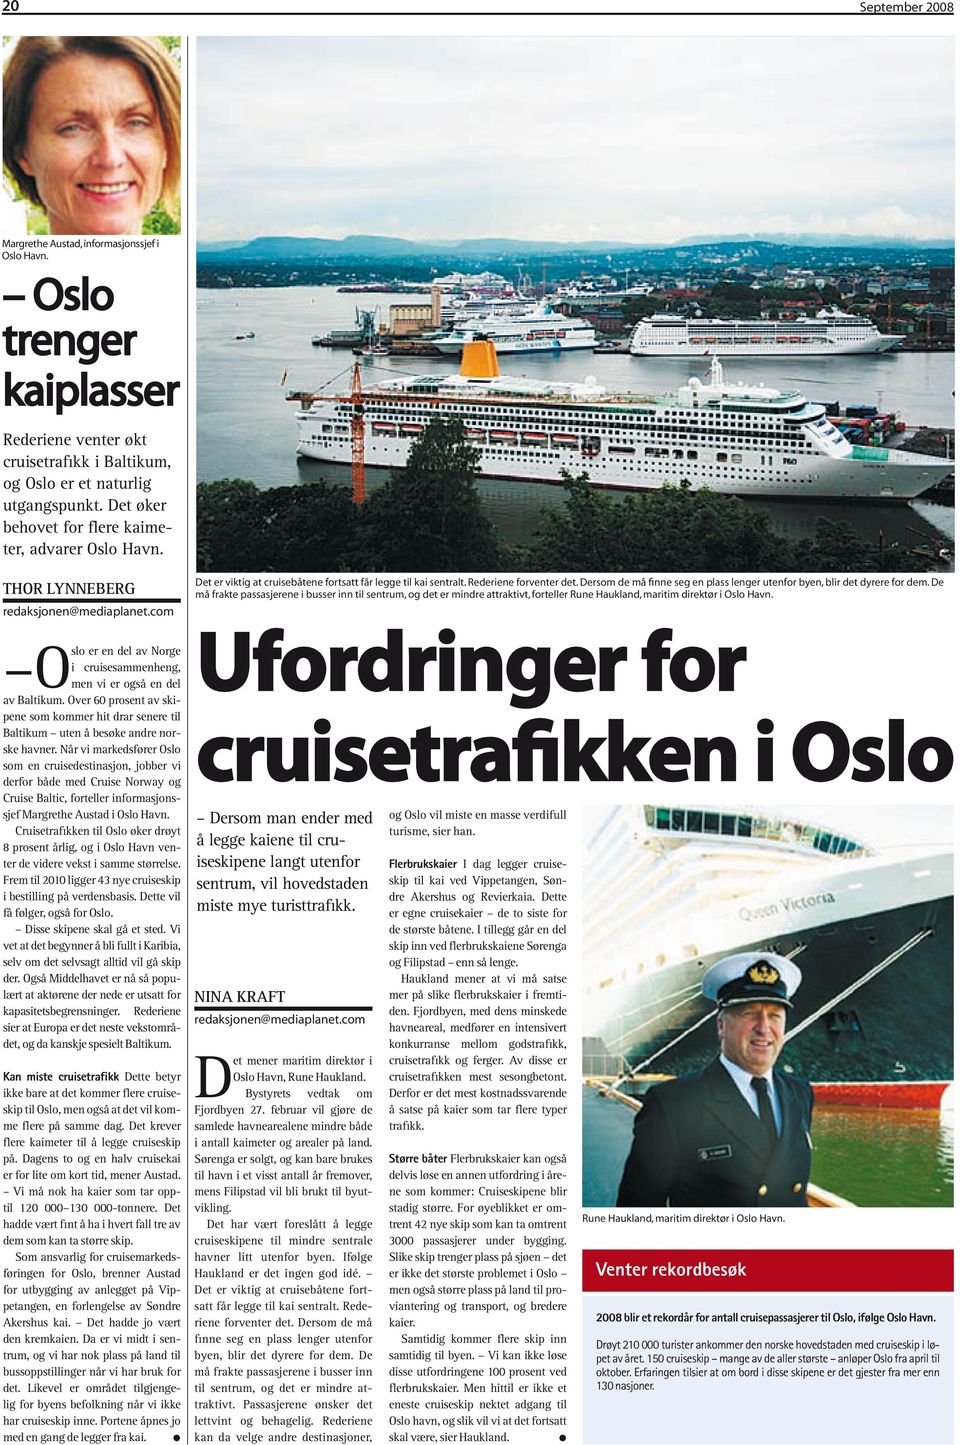 Over 60 prosent av skipene som kommer hit drar senere til Baltikum uten å besøke andre norske havner.